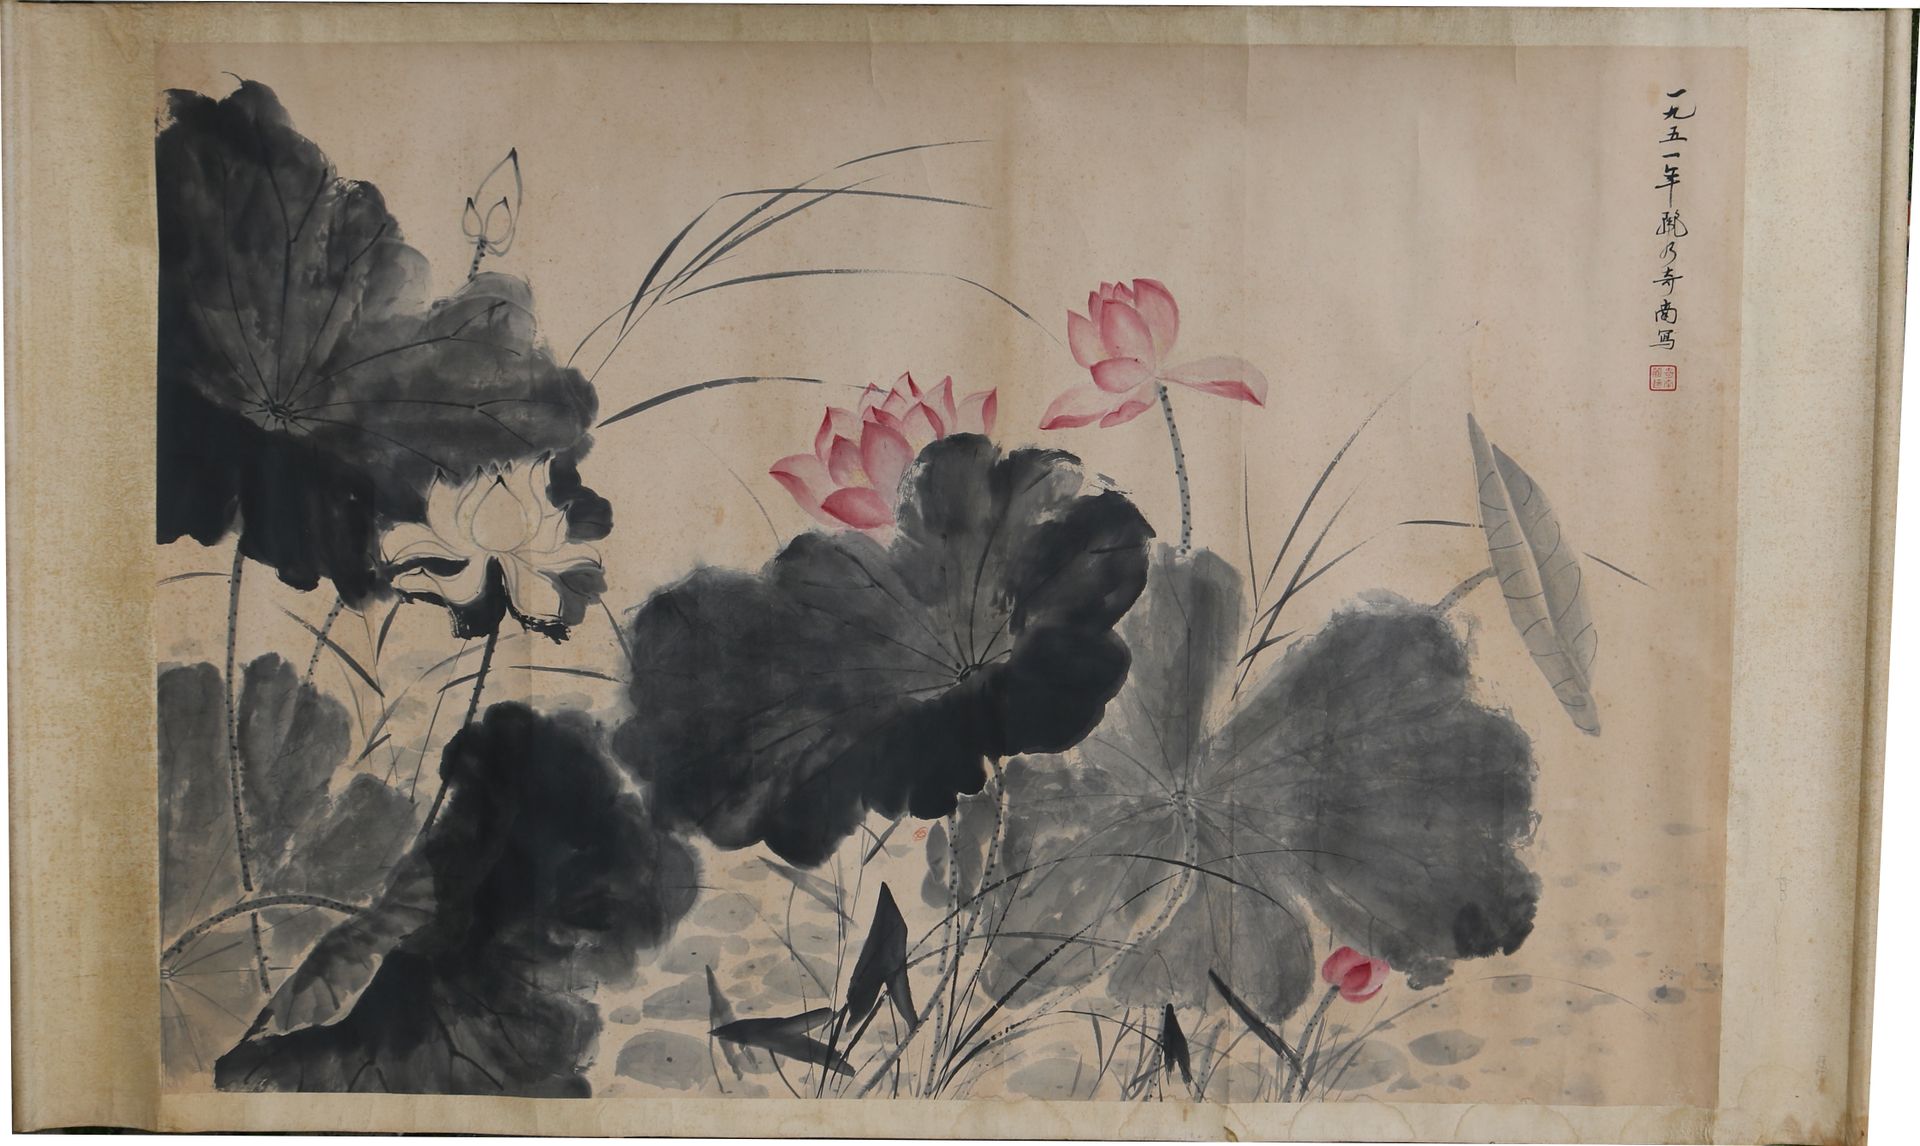 Qi Nan CHINA, 1951
Qi Nan
Tinte und Farben auf Papier, Lotus in ihren Blättern

&hellip;